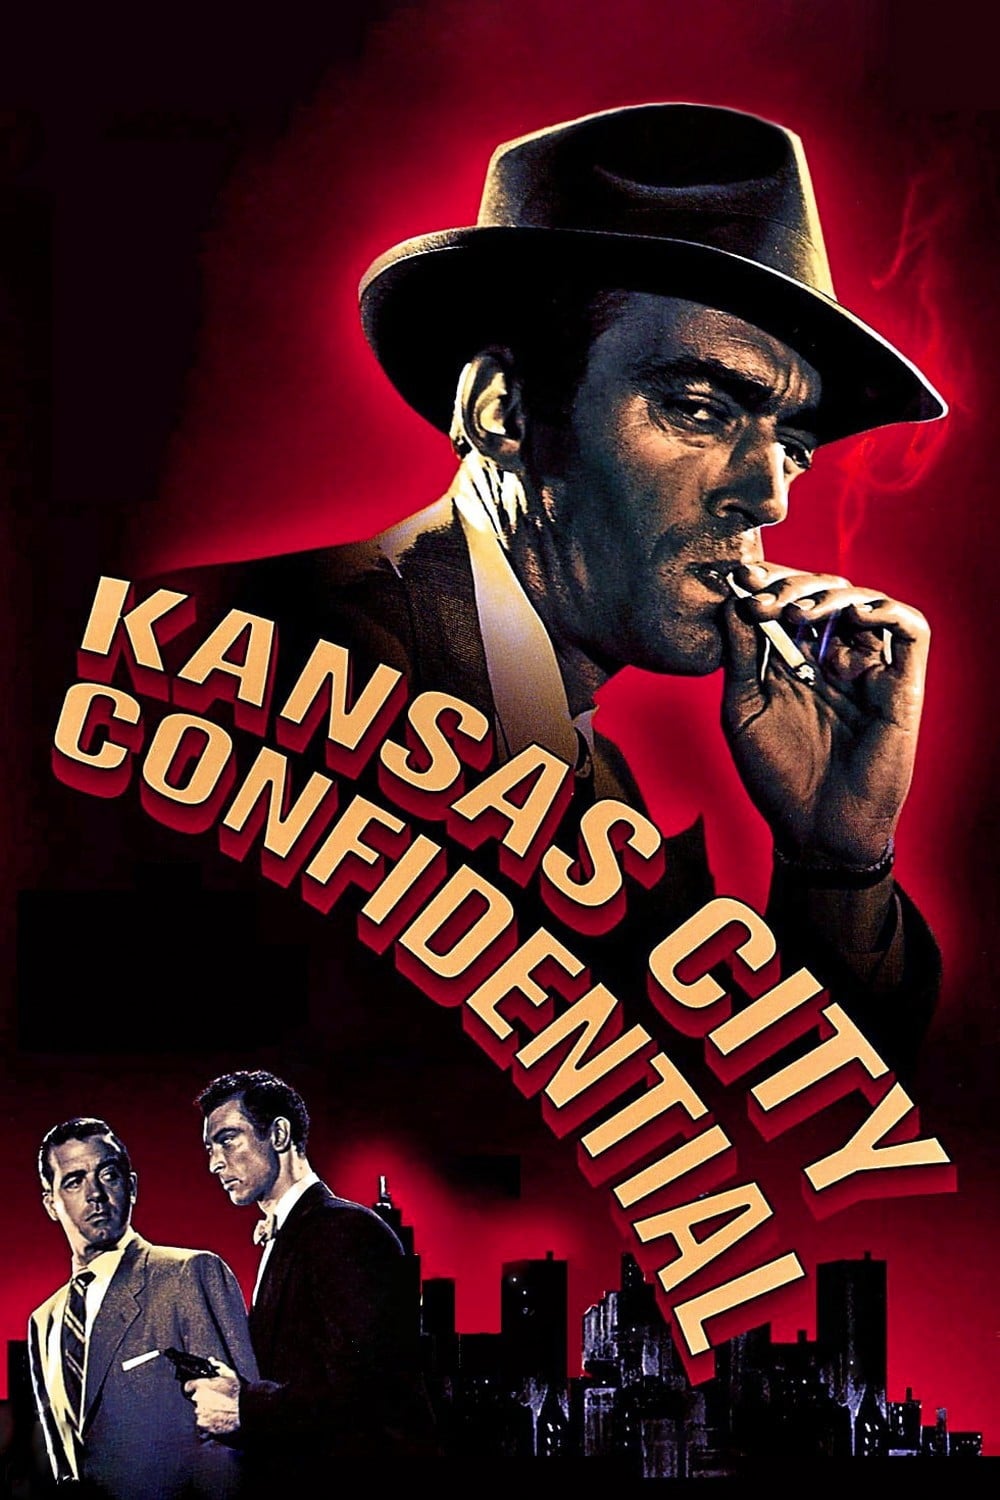 Kansas City Confidential (1952)